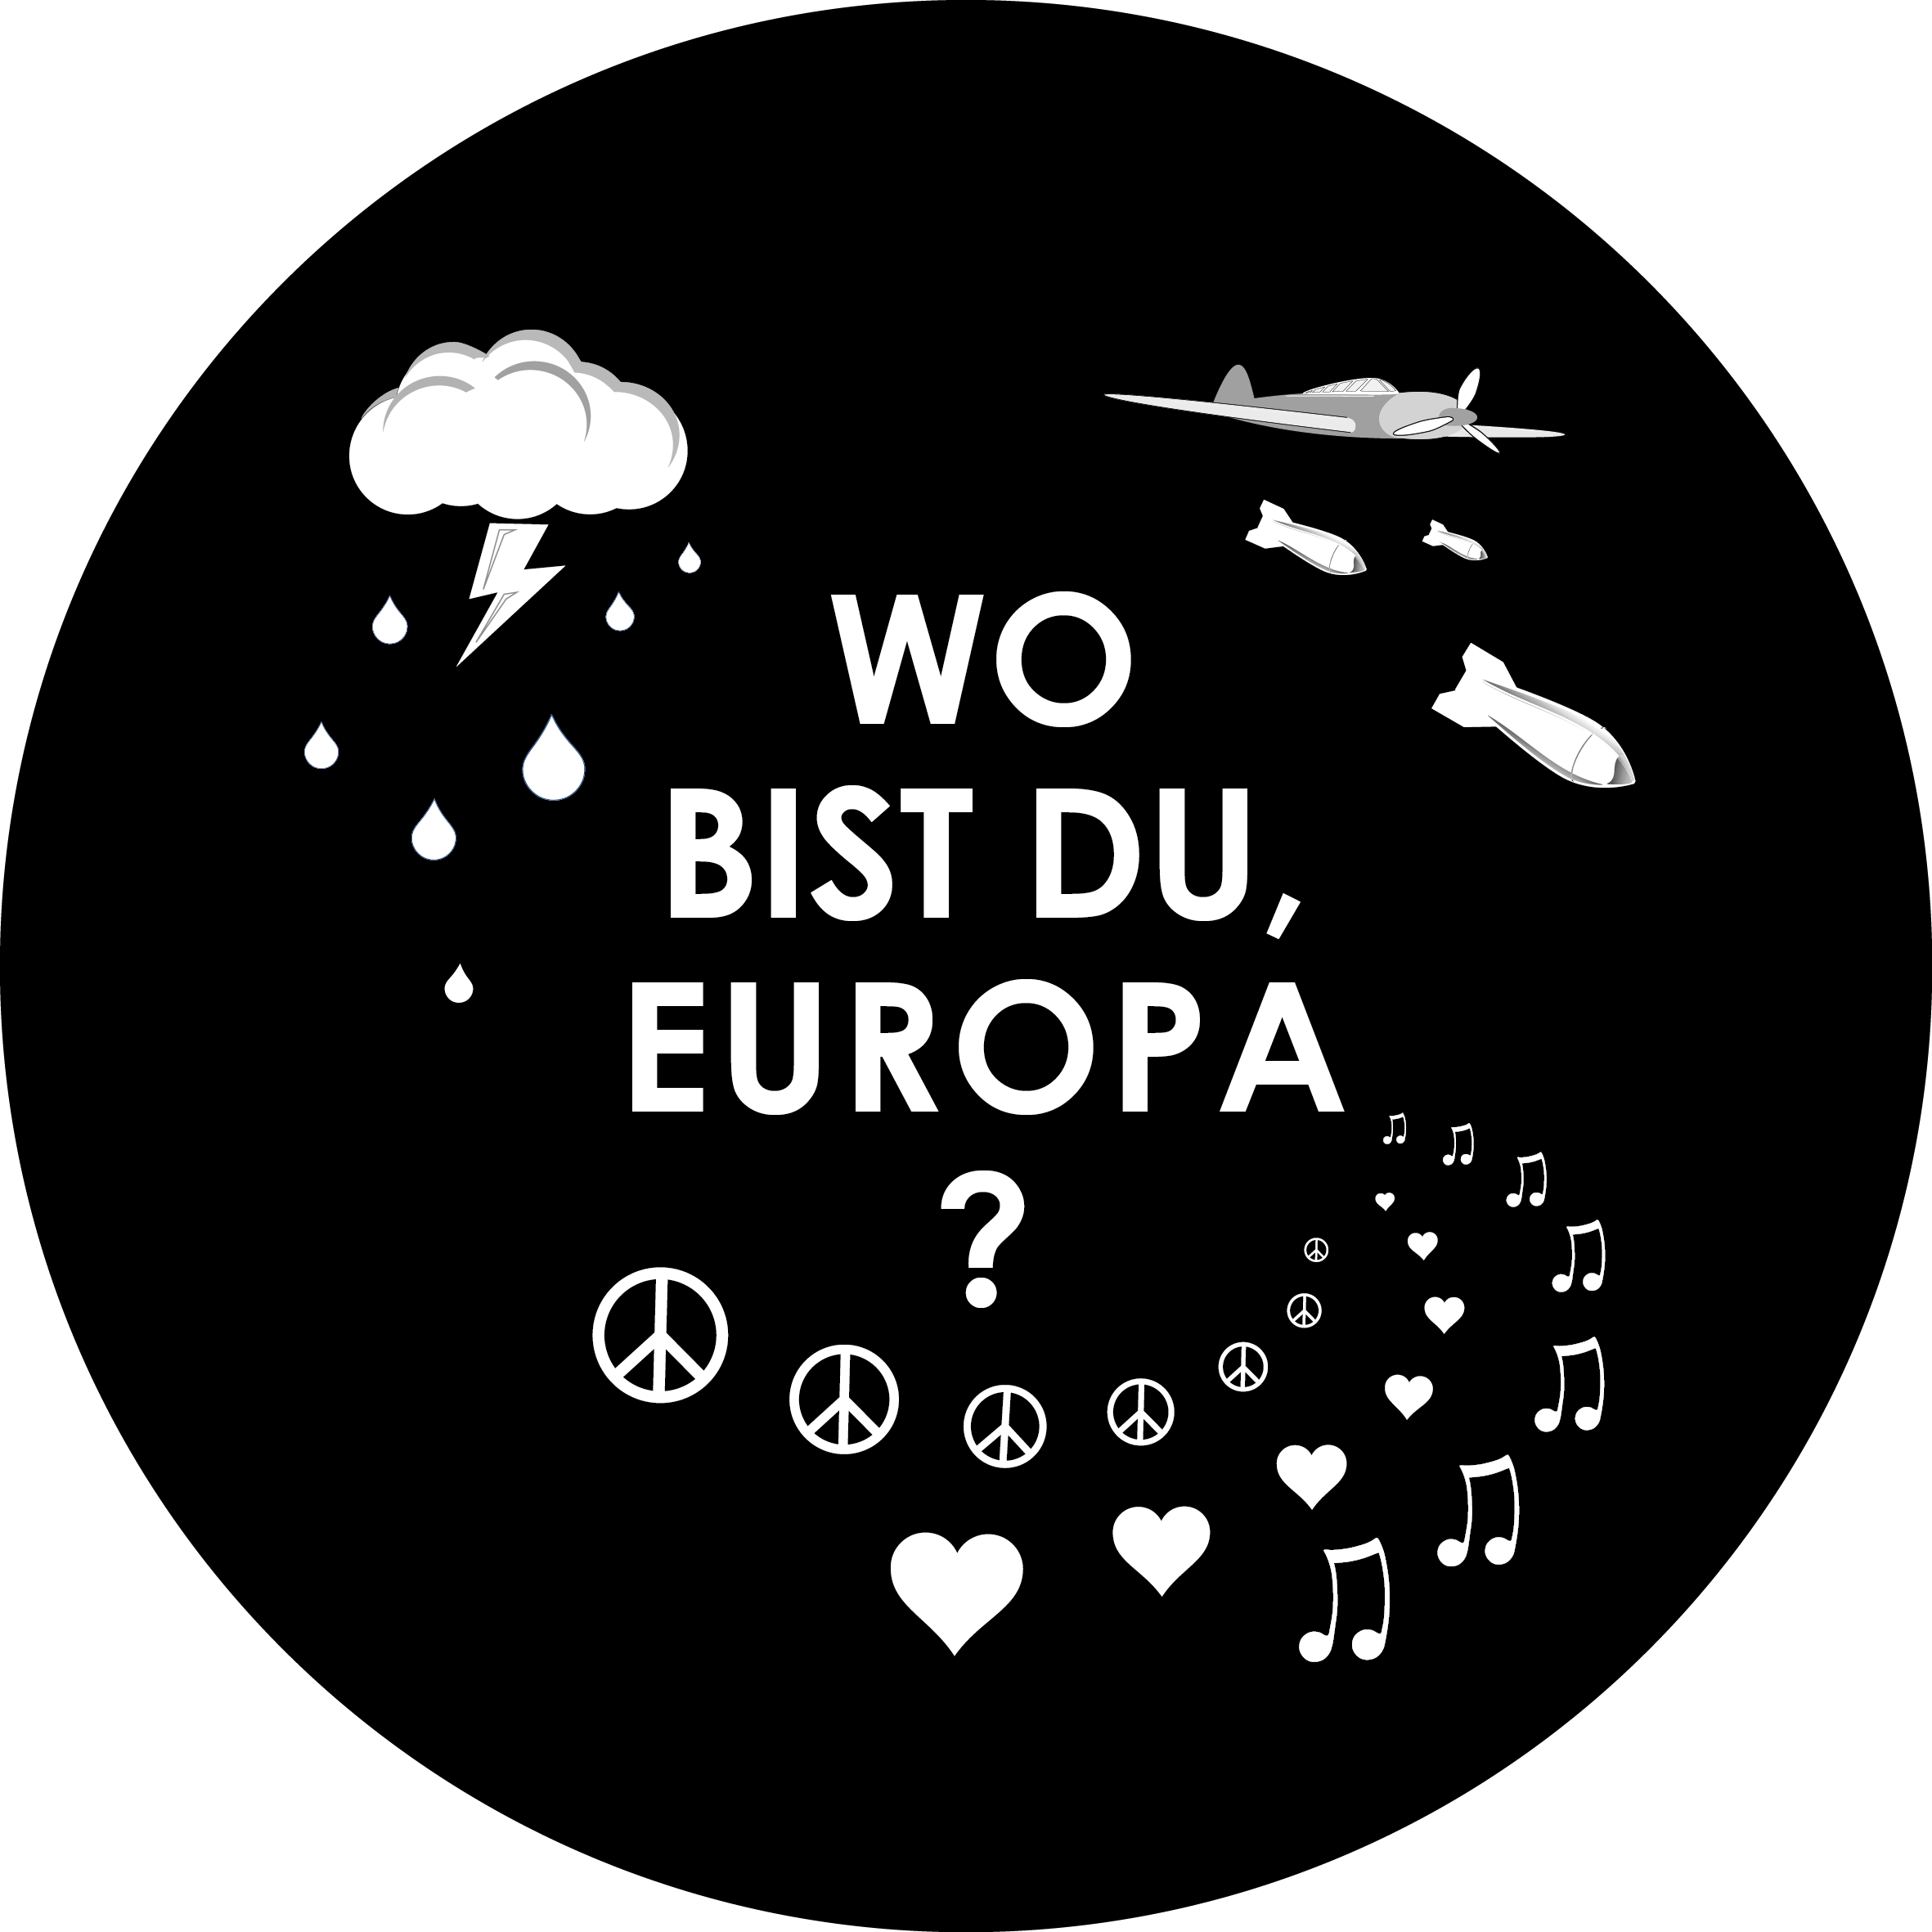 Crowdfunding – WO BIST DU, EUROPA?